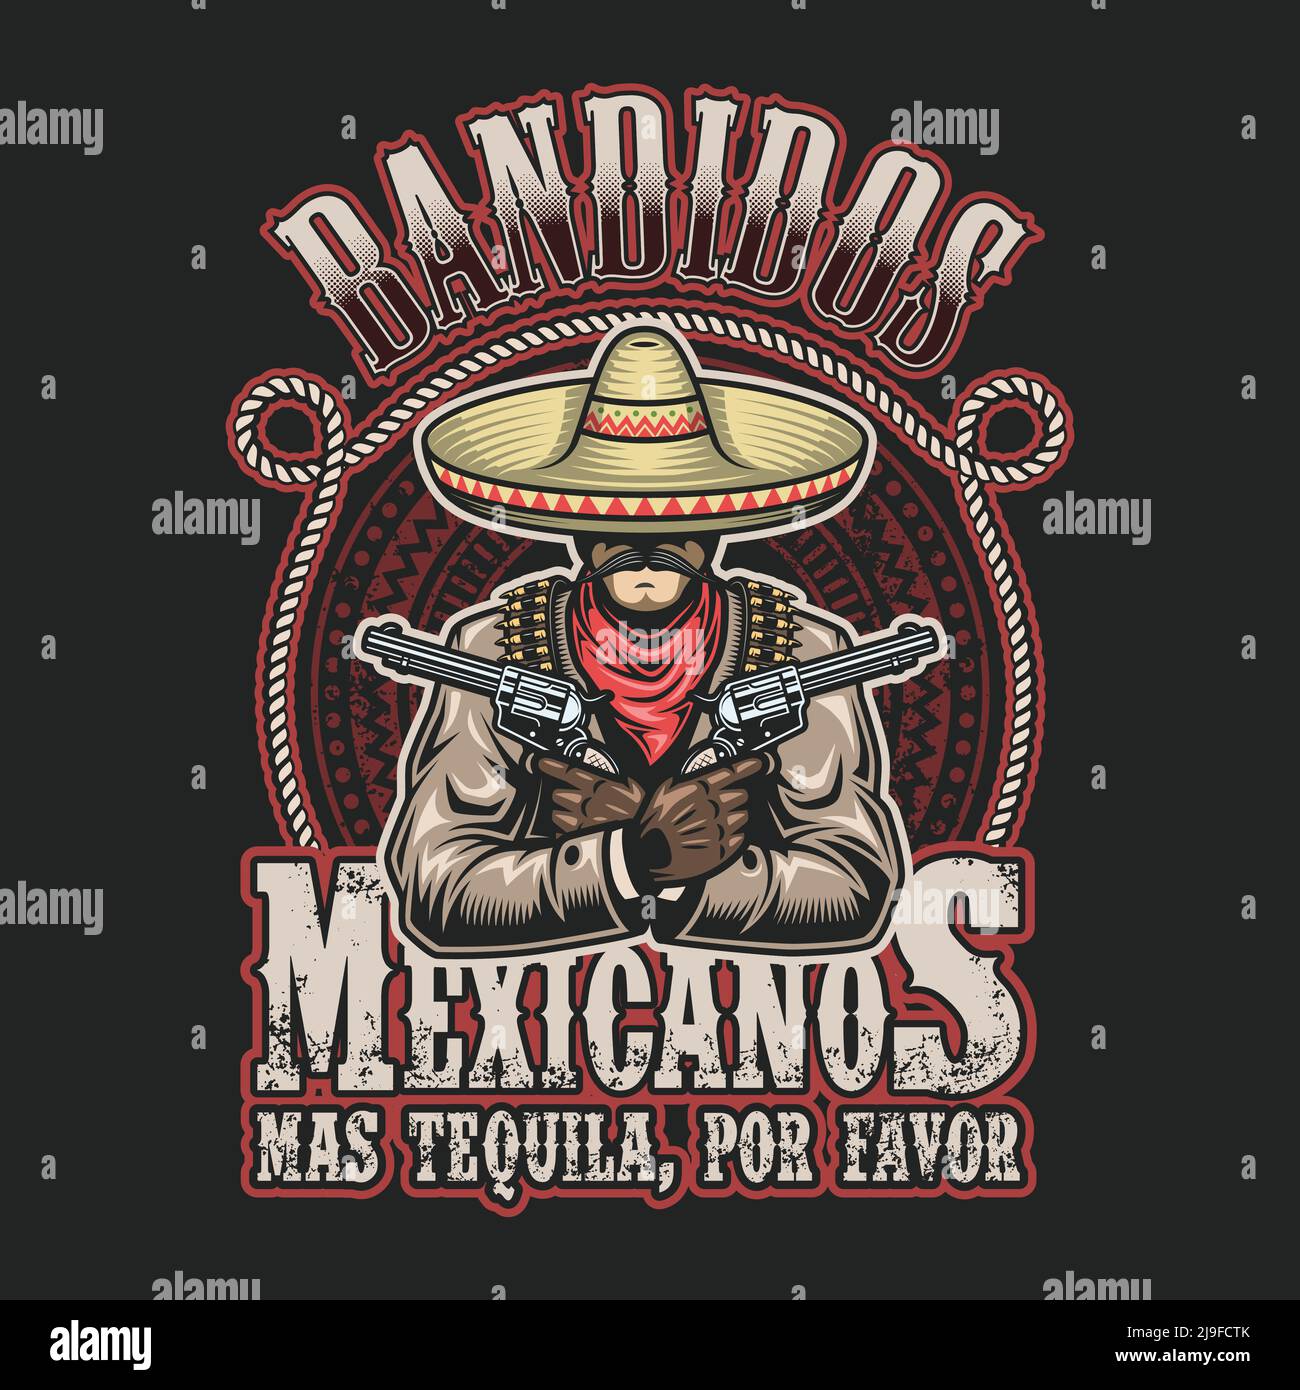 10 Mexican Gunslinger Illustrations RoyaltyFree Vector Graphics  Clip  Art  iStock  Bandito